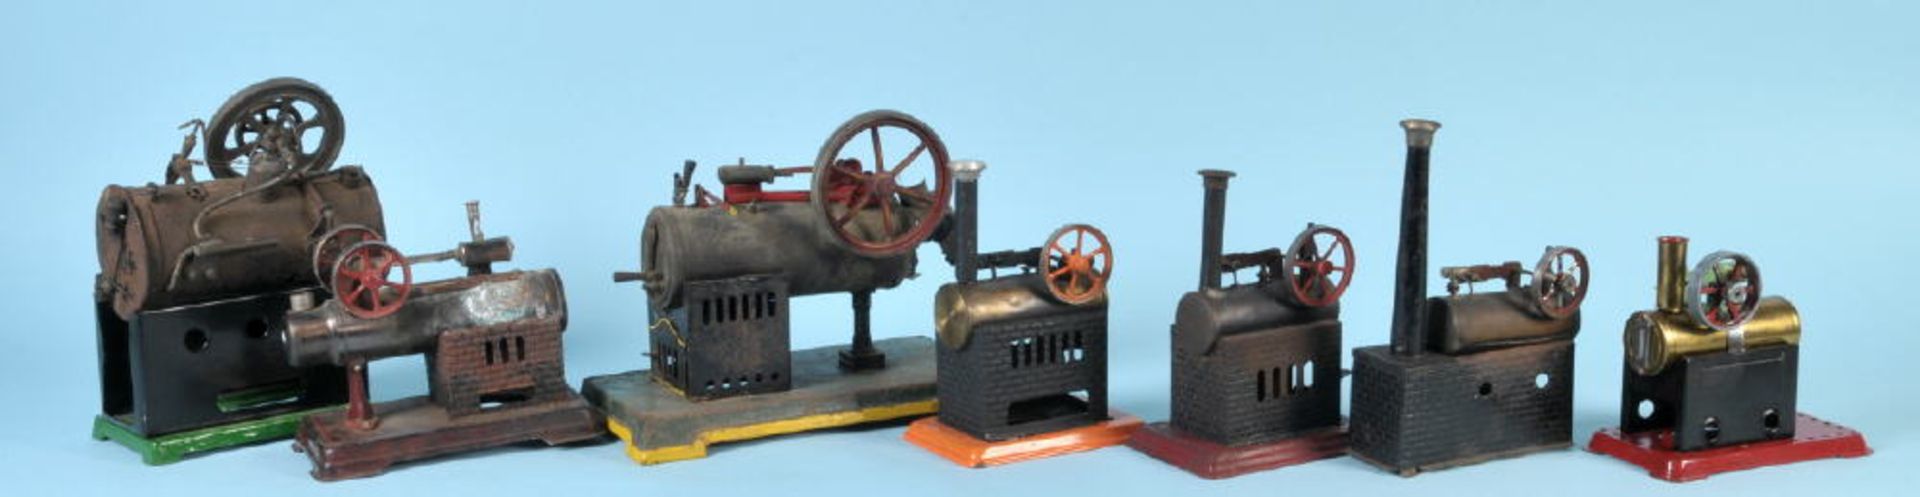 Dampfmaschinen, 7 StückMetall, auf Sockelplatte, H= 16-27 cm, nicht kpl., teilw. besch./korrodiert